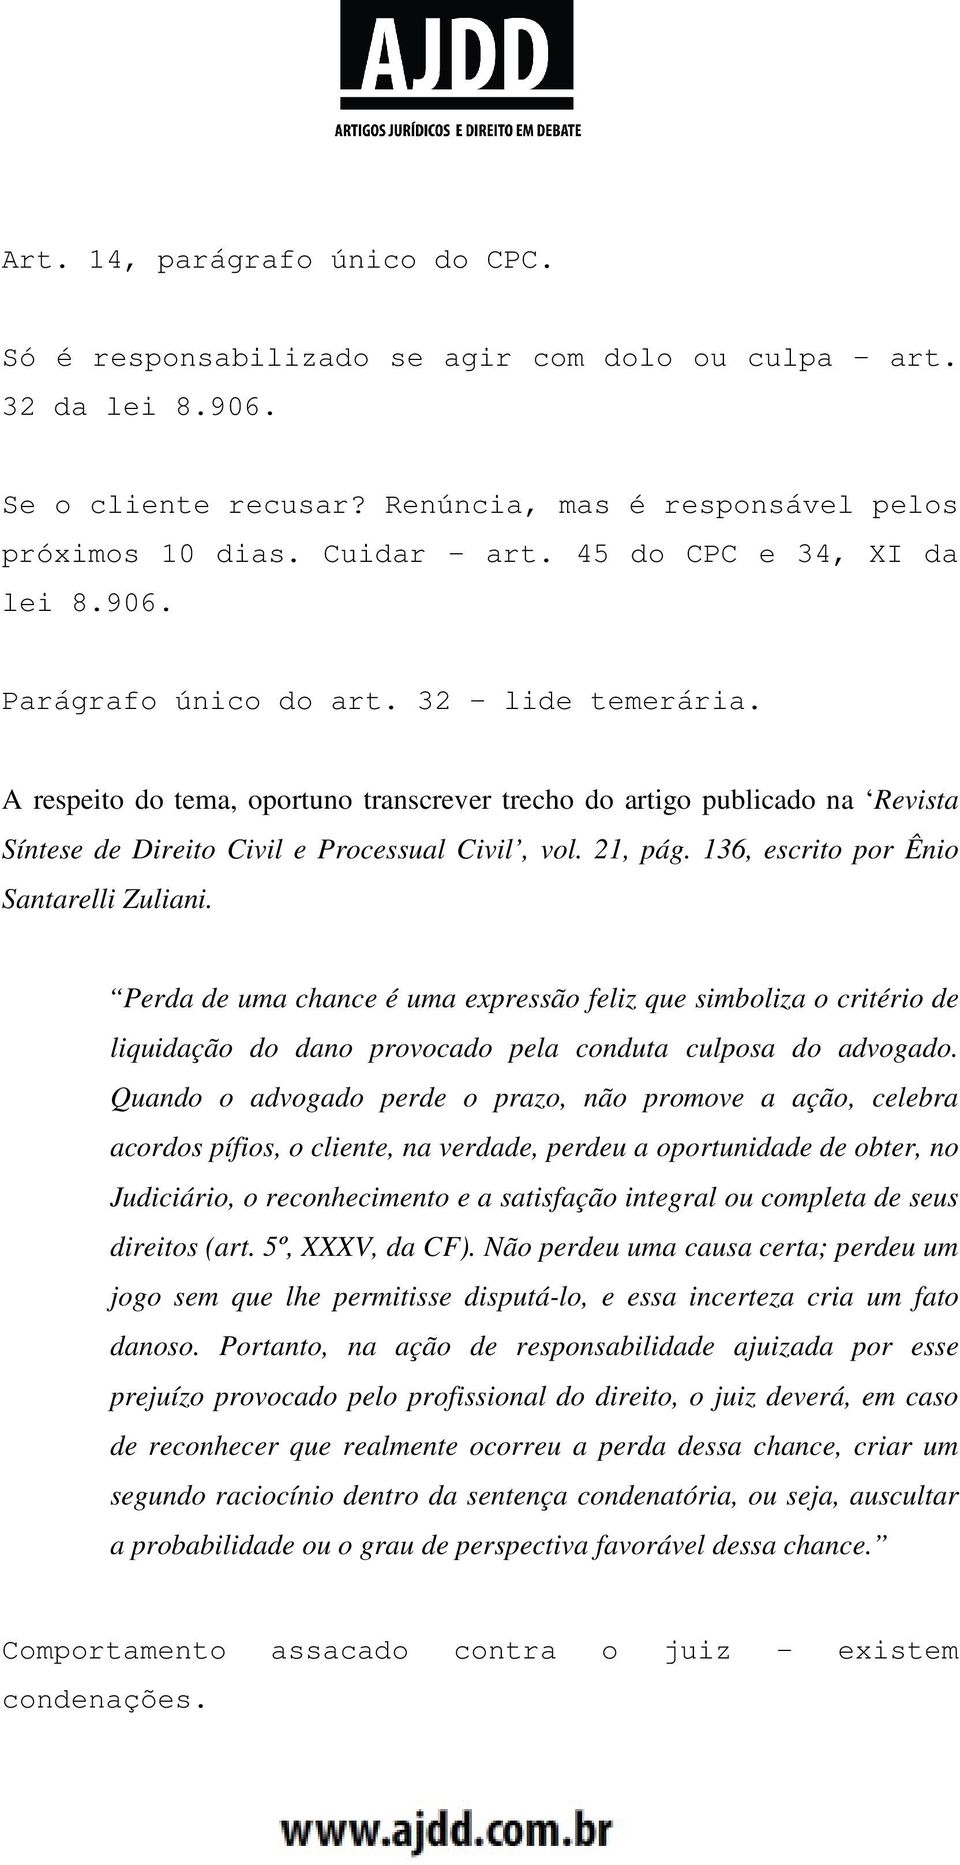 A respeito do tema, oportuno transcrever trecho do artigo publicado na Revista Síntese de Direito Civil e Processual Civil, vol. 21, pág. 136, escrito por Ênio Santarelli Zuliani.